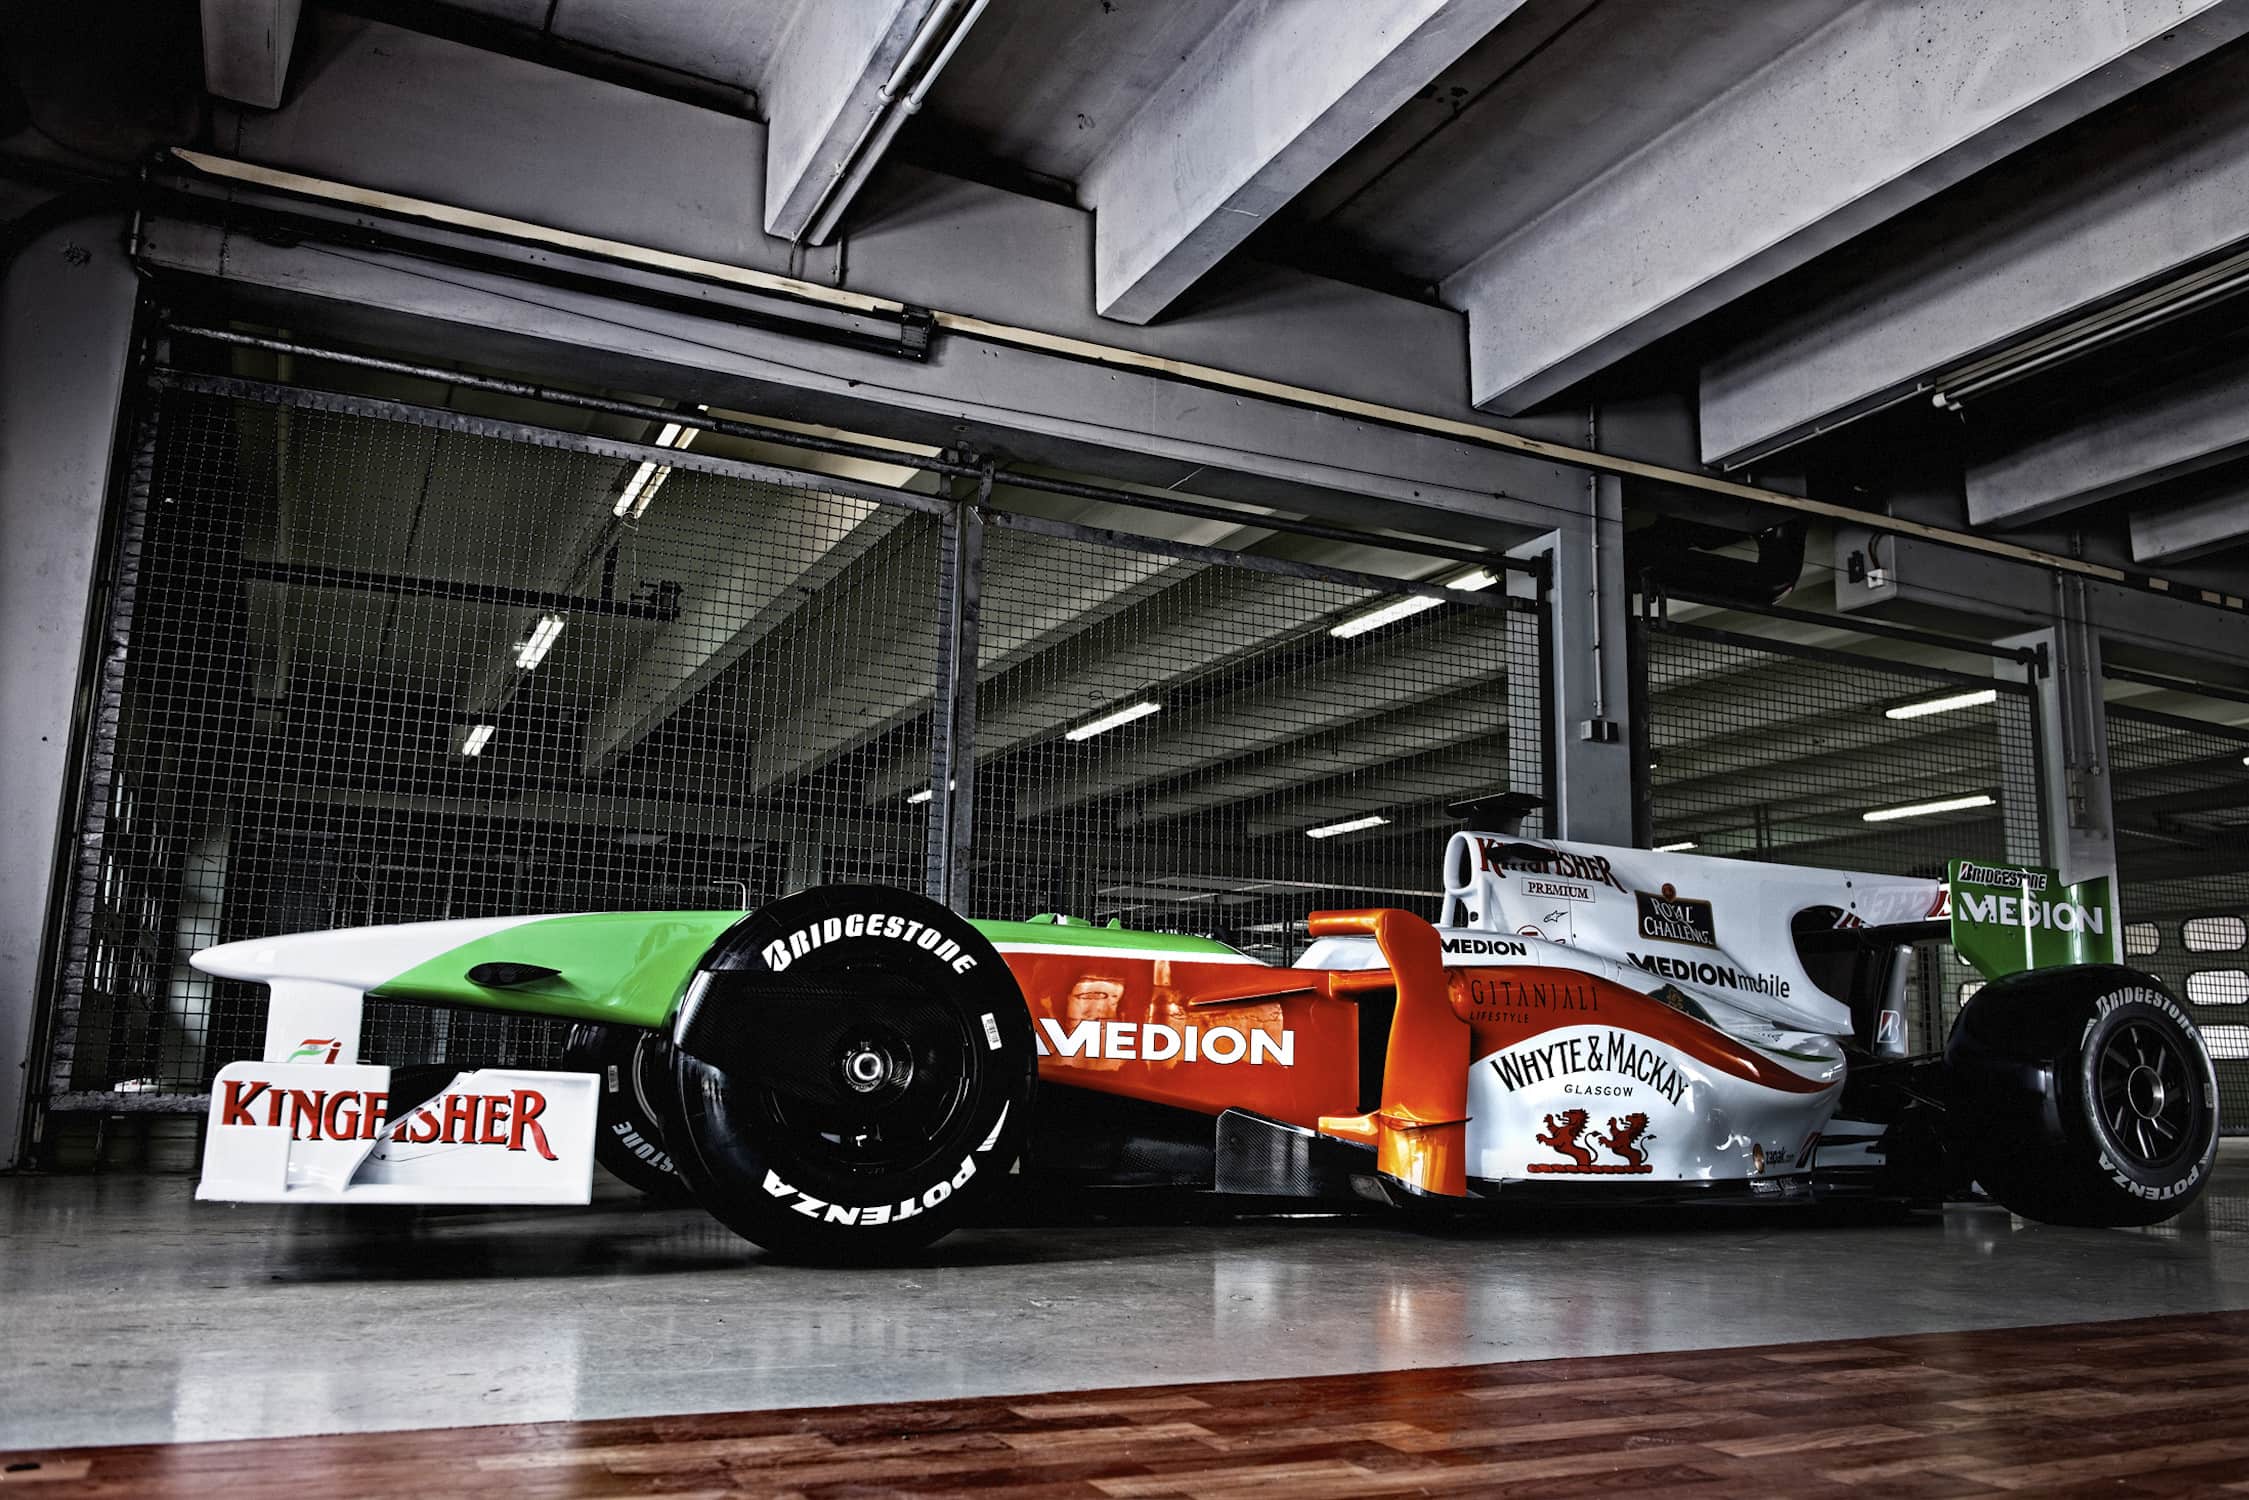 Fotos eines Formel 1 Rennwagens